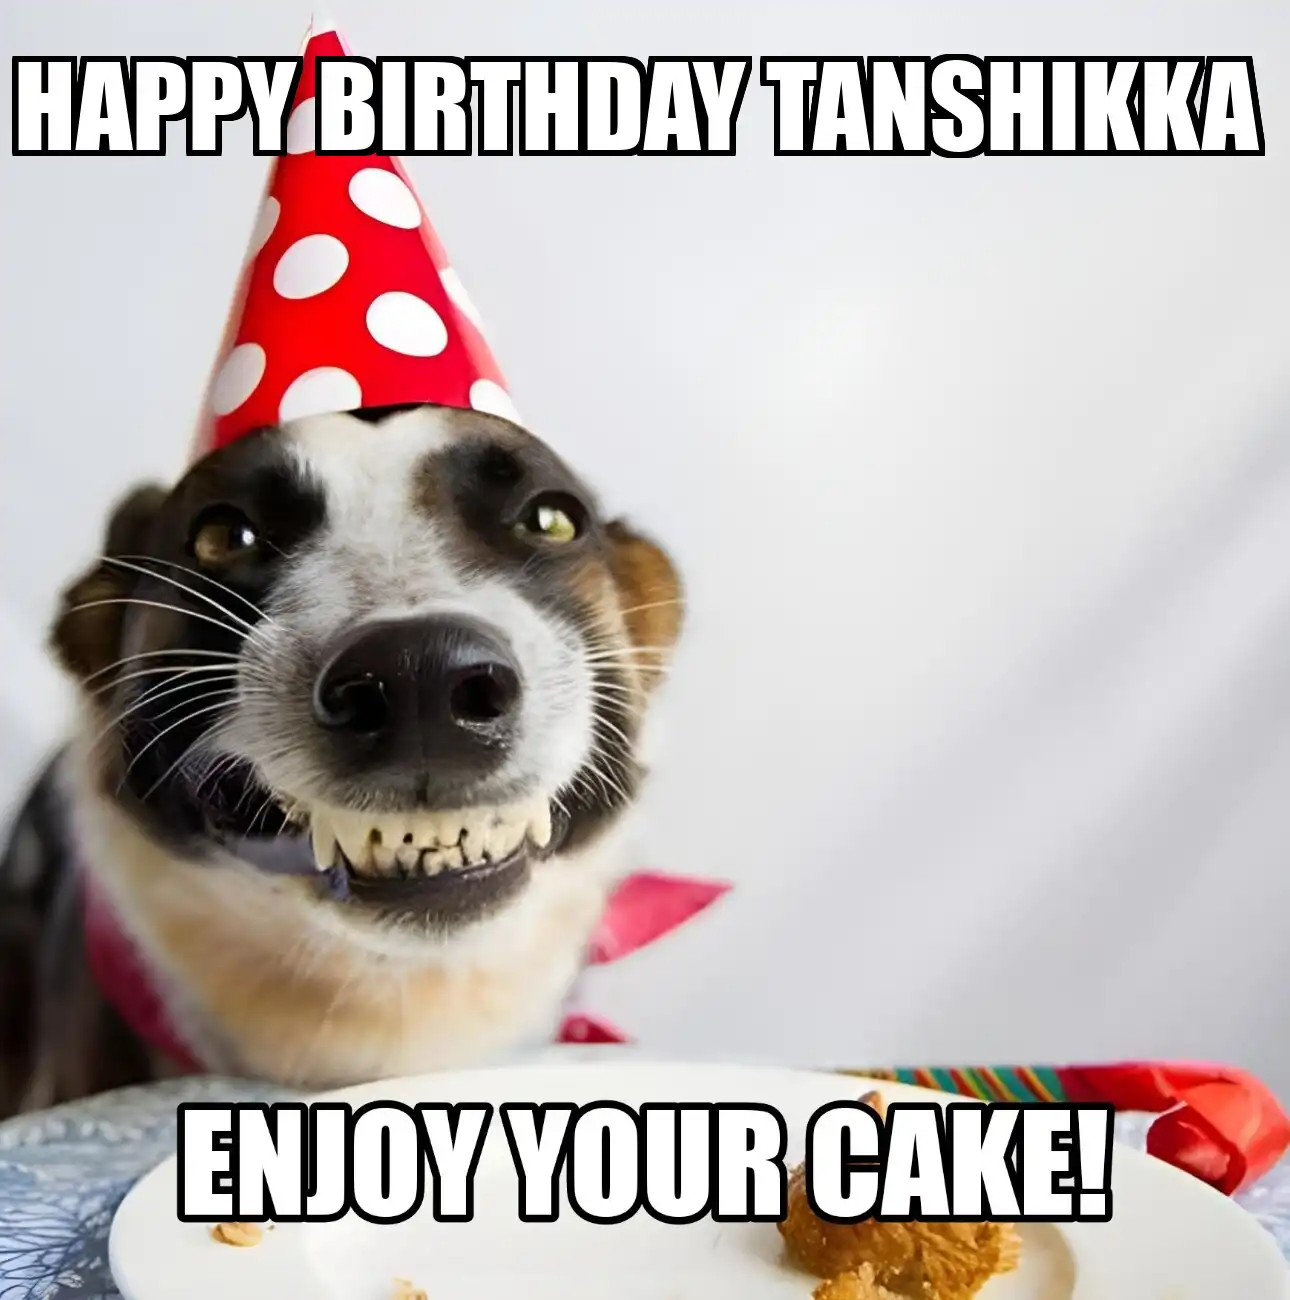 Happy Birthday Tanshikka Enjoy Your Cake Dog Meme